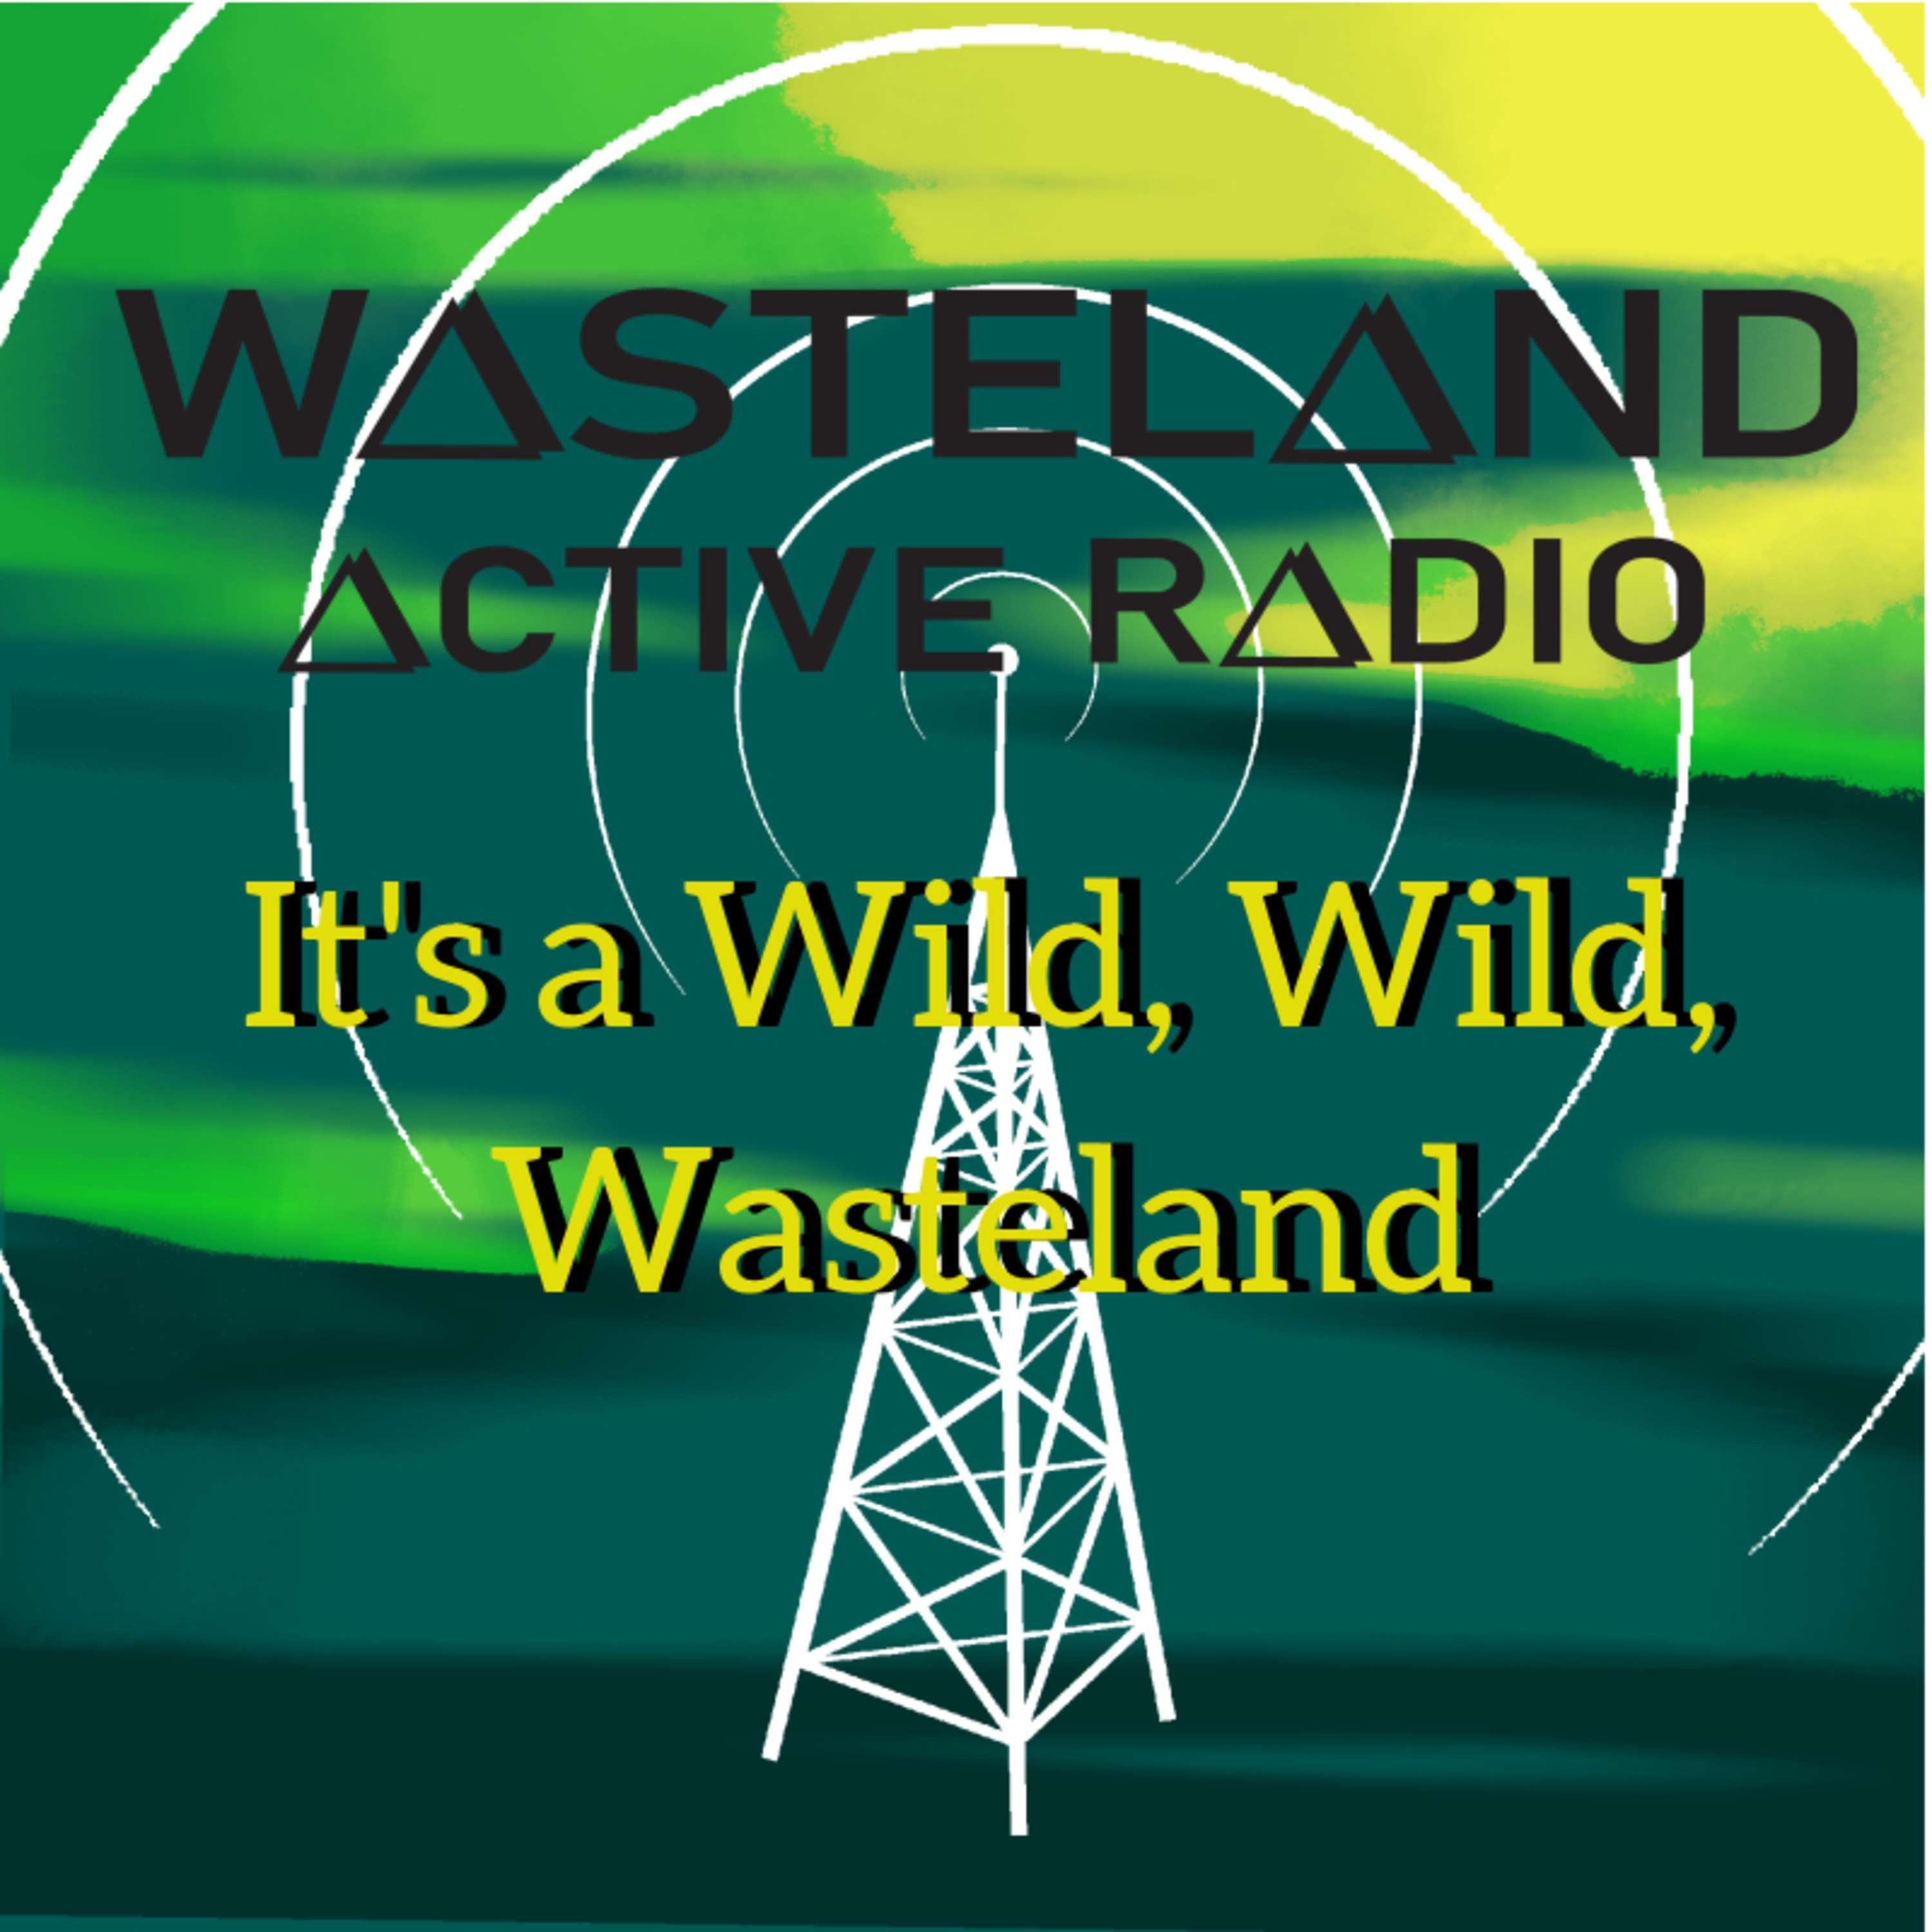 Episode /&^@: It’s a Wild, Wild, Wasteland